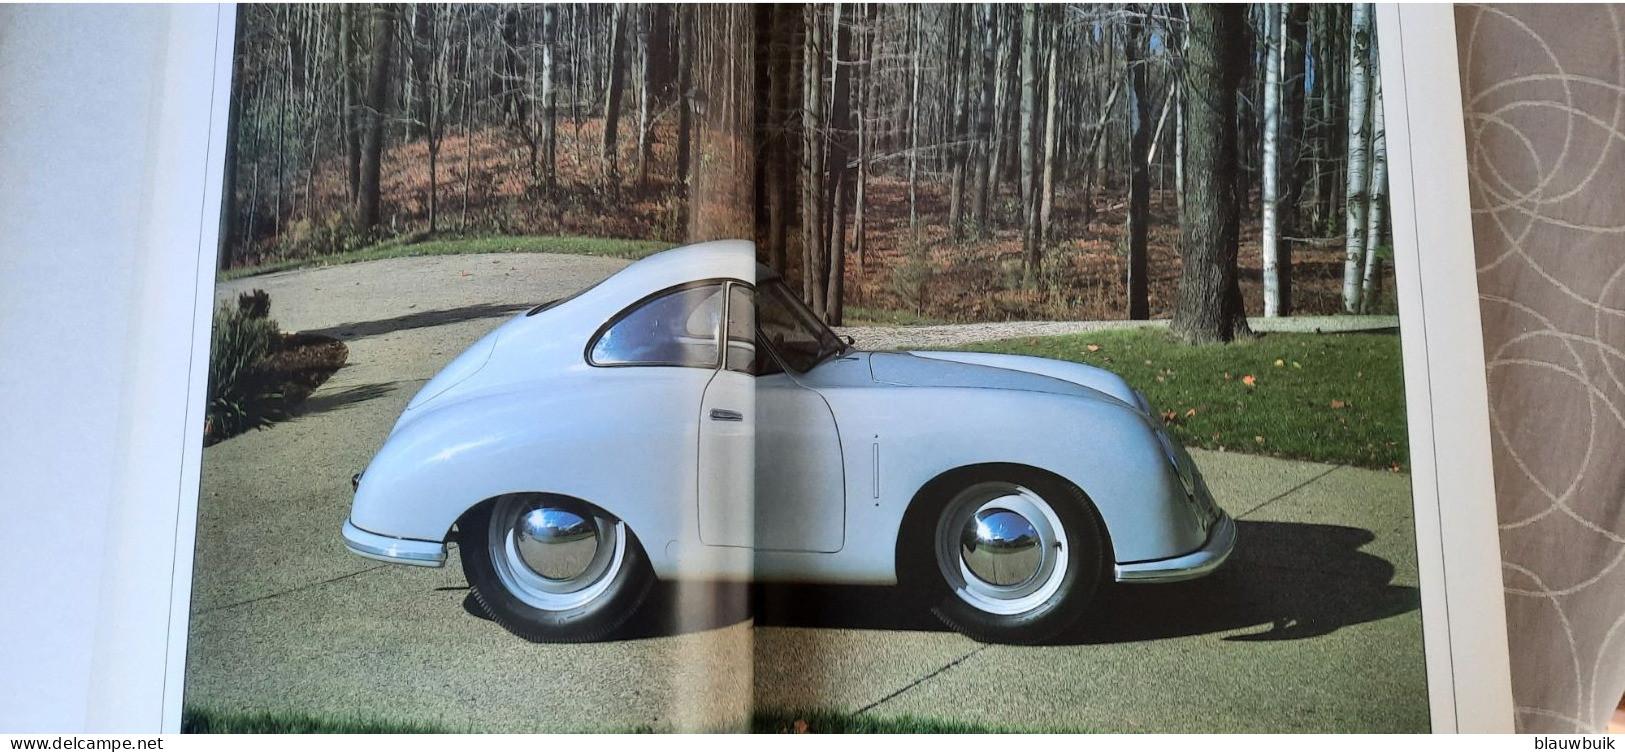 Goebel kristal Porsche 356 1962 + boek Porsche , een legende die voortduurt